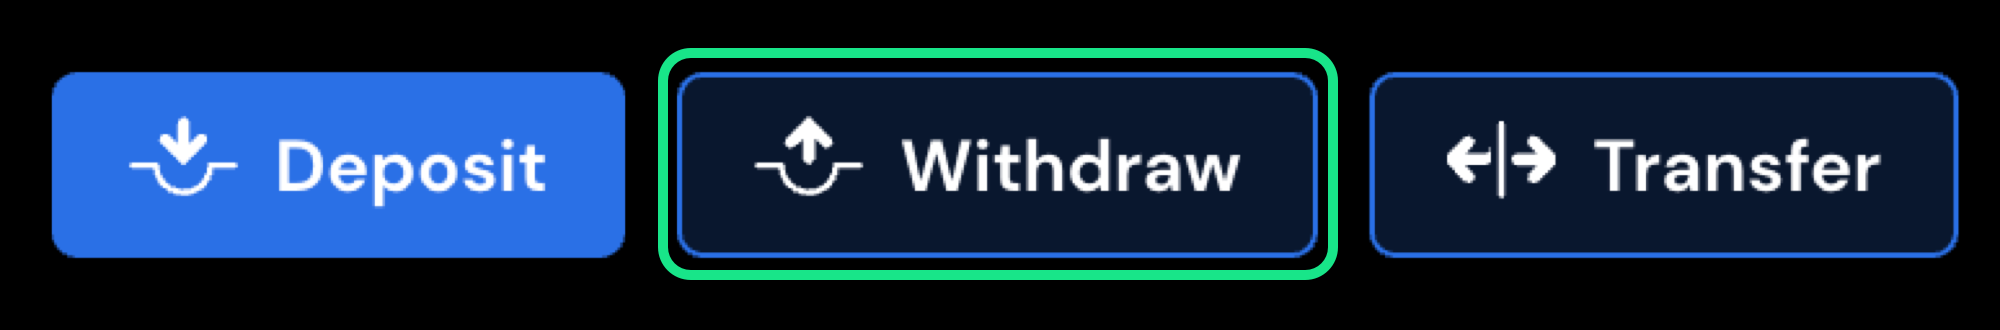 Withdrawal button under portfolio next to deposit button